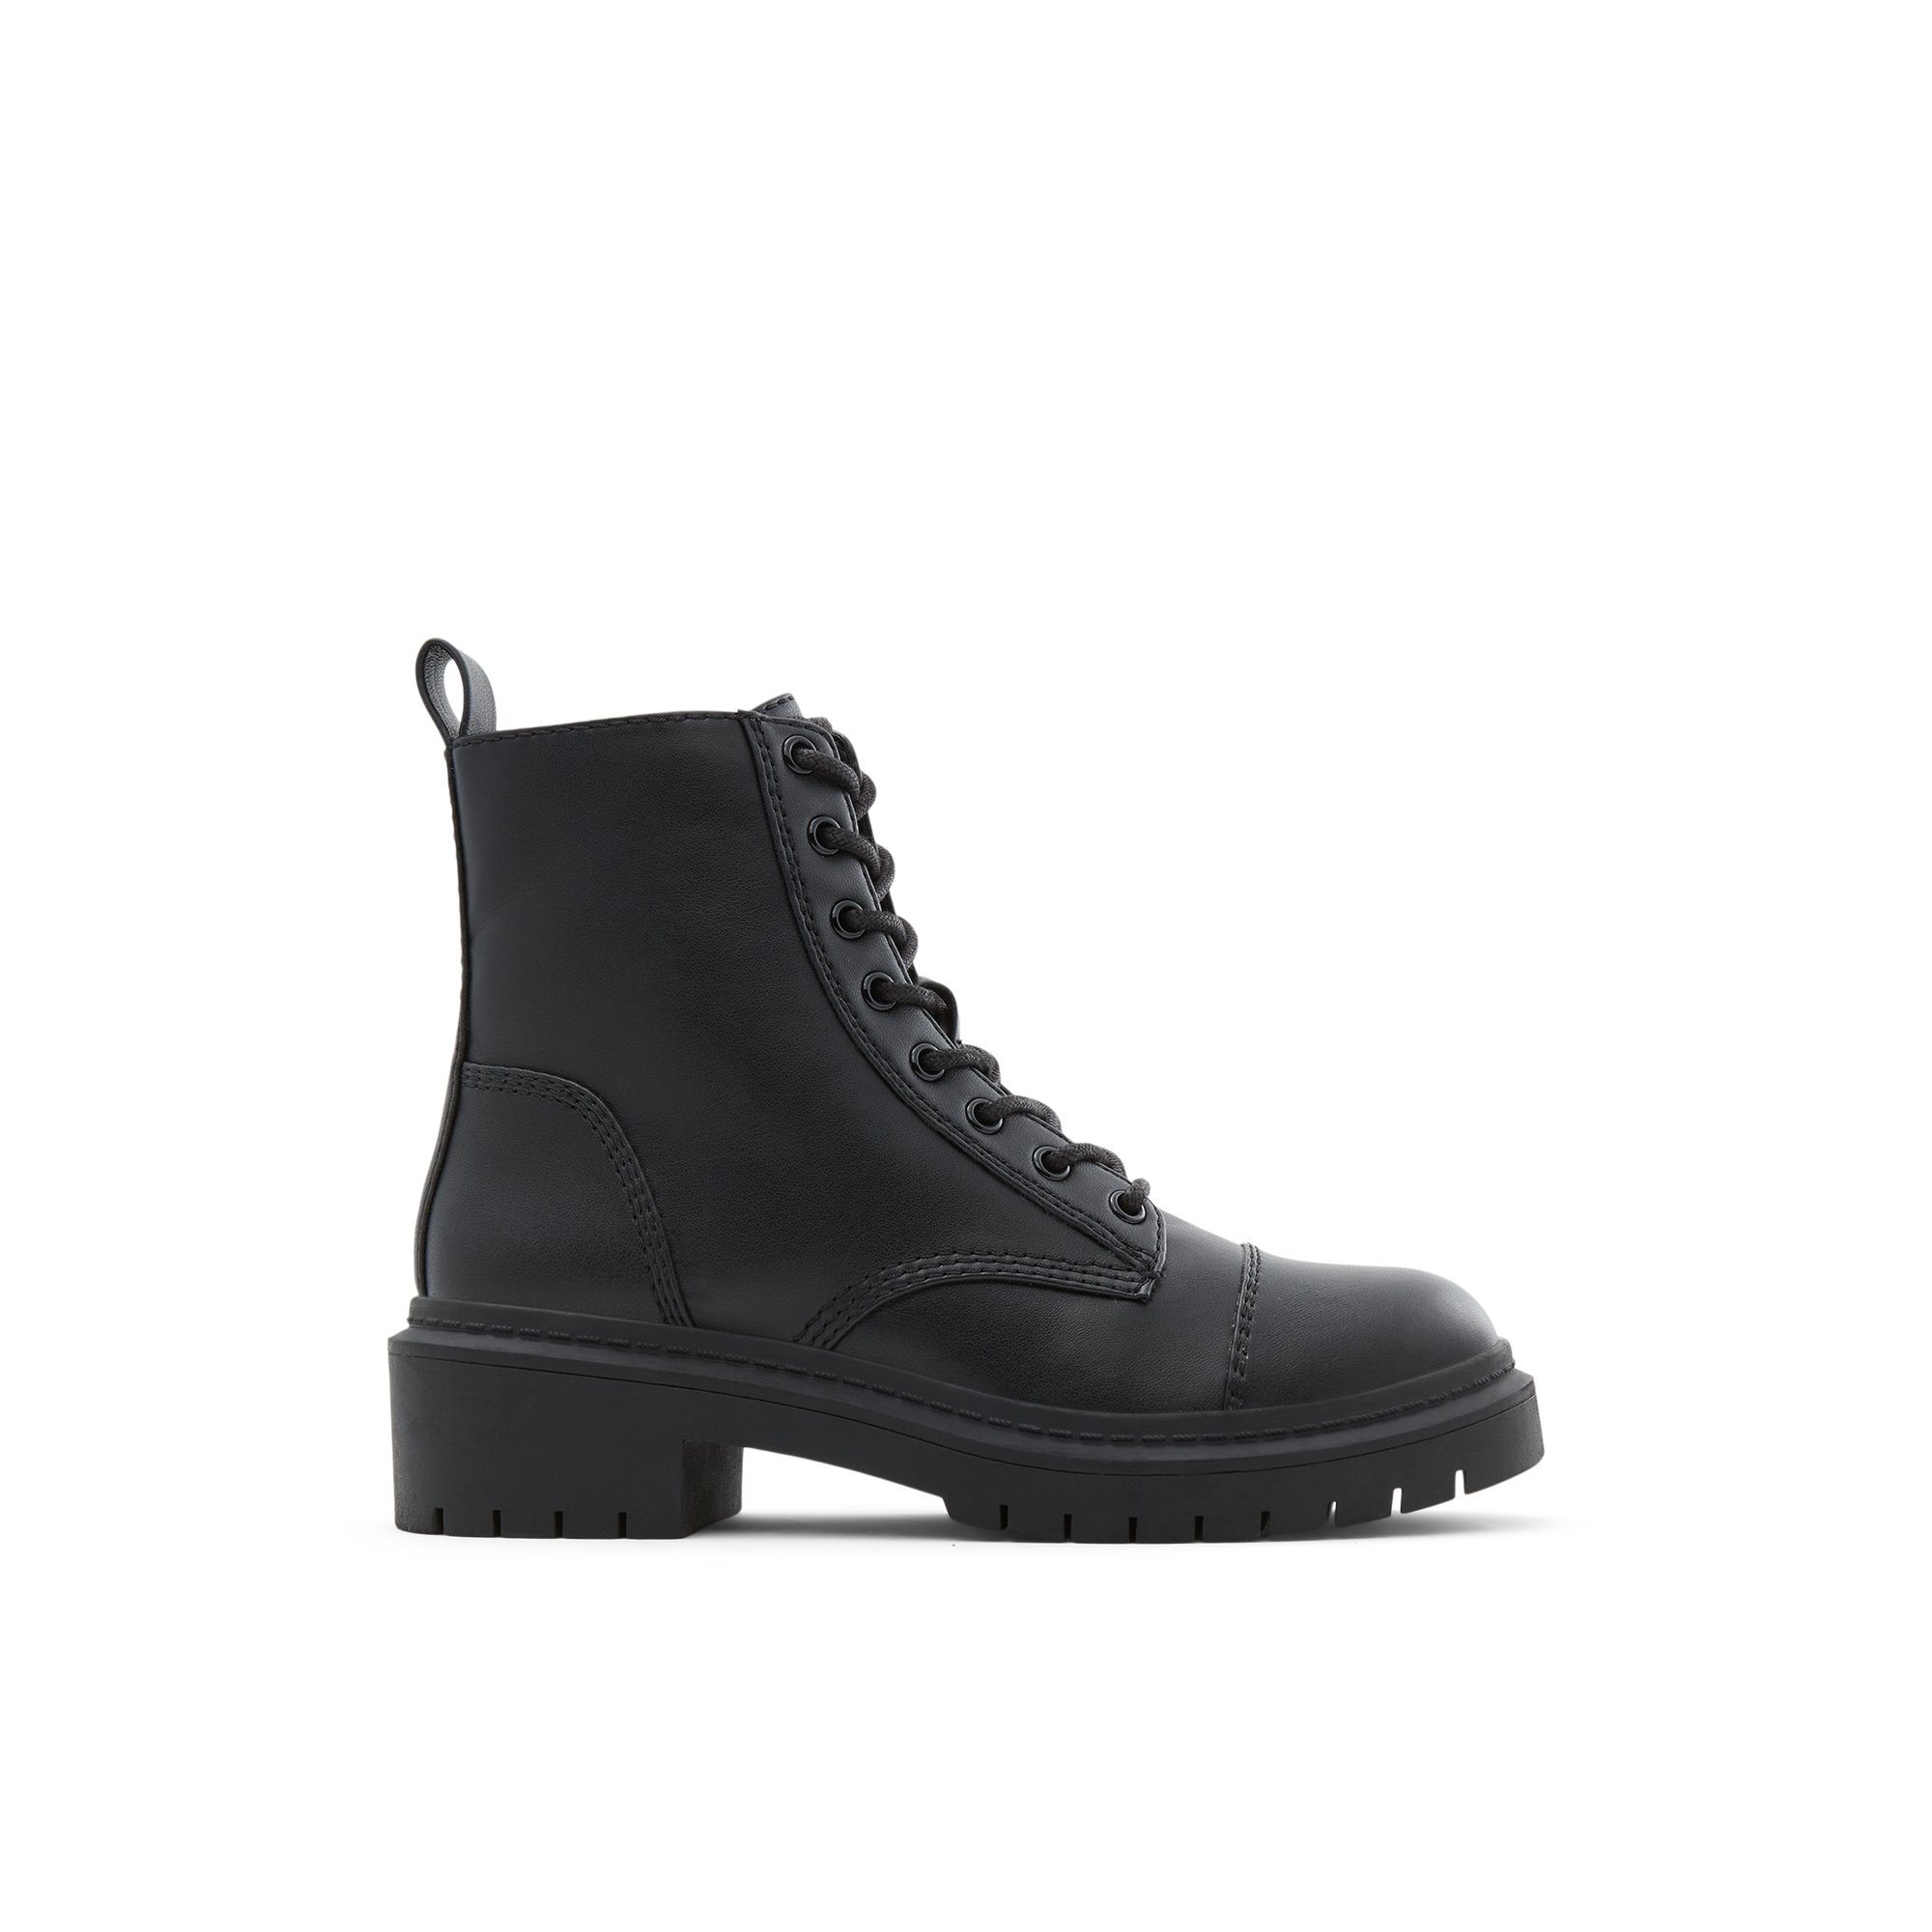 ALDO Goer - Women's Boots Casual - Black